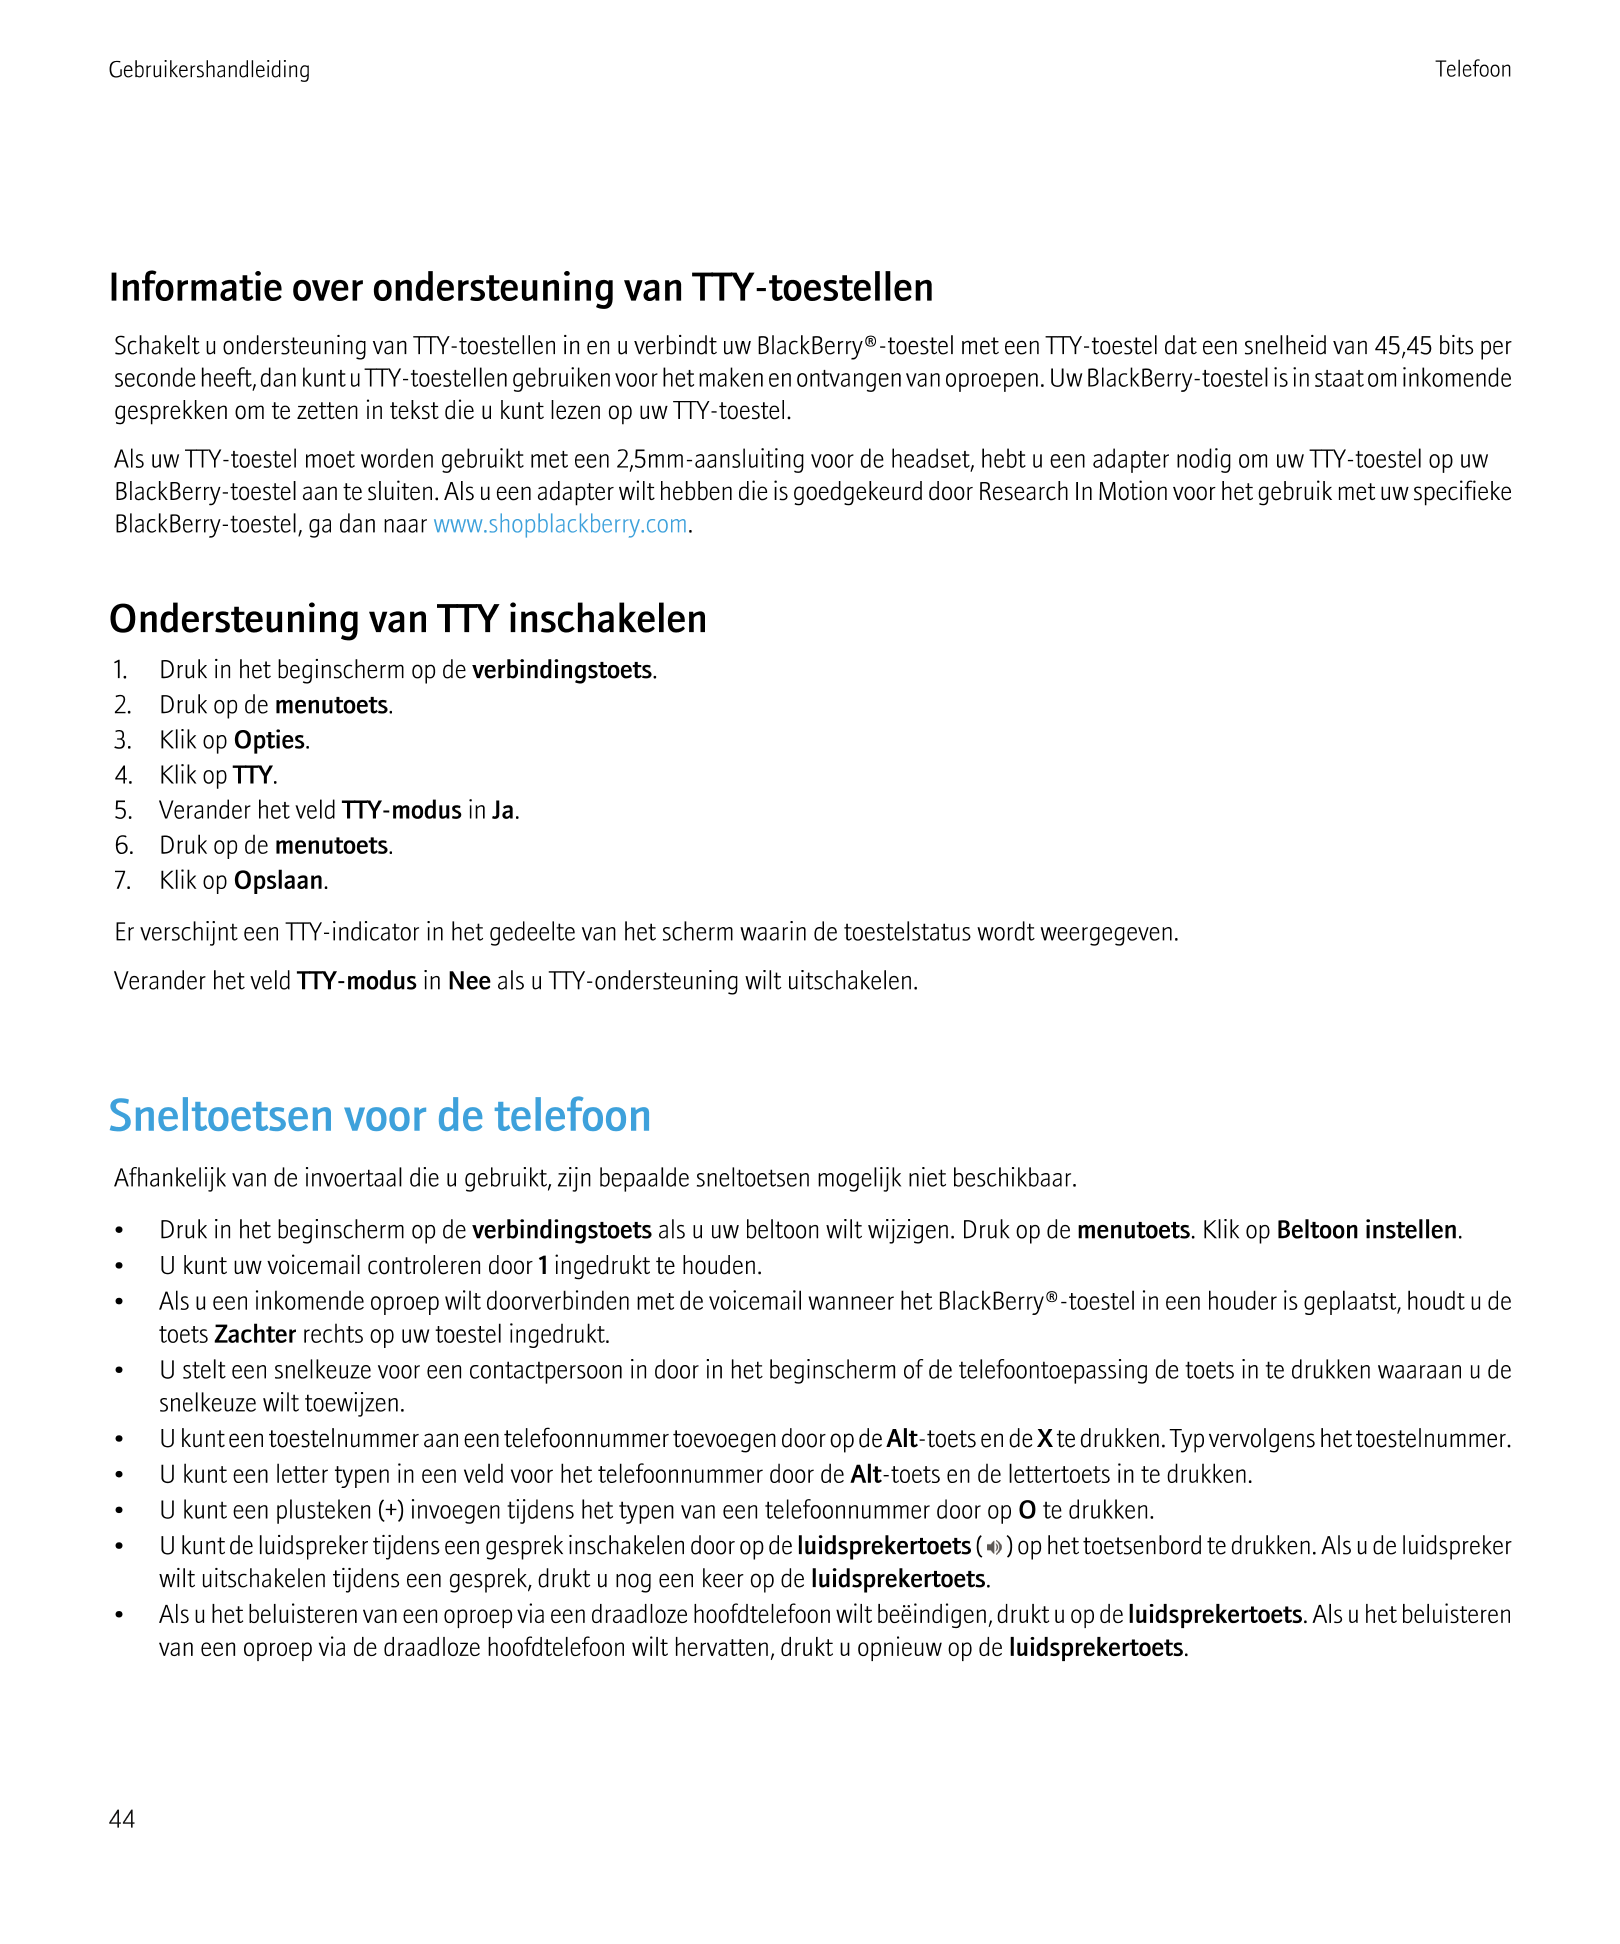 Gebruikershandleiding Telefoon
Informatie over ondersteuning van TTY-toestellen
Schakelt u ondersteuning van TTY-toestellen in e